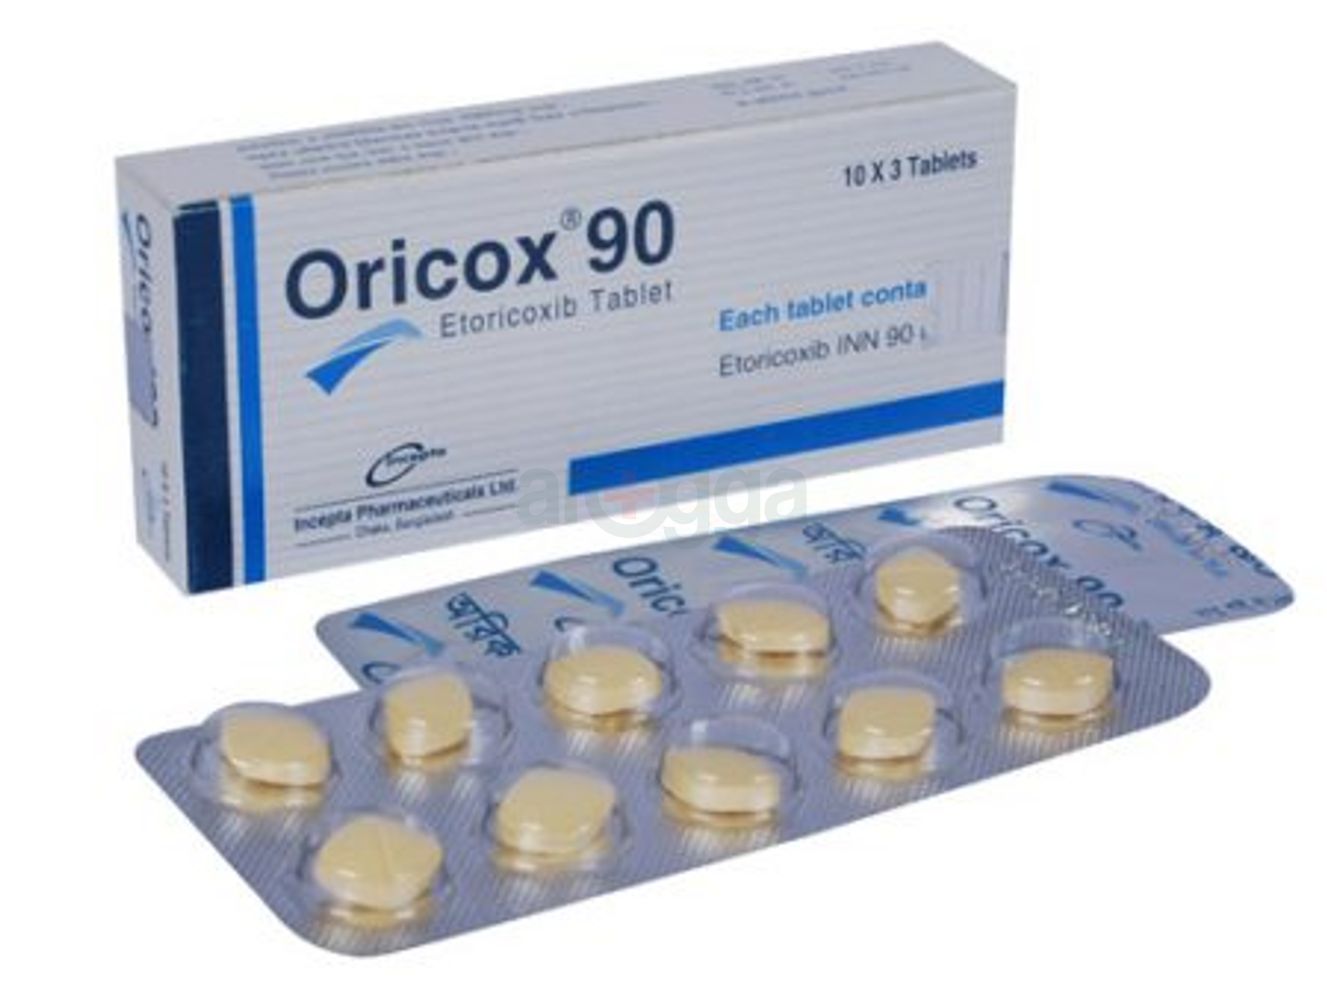 Oricox 90